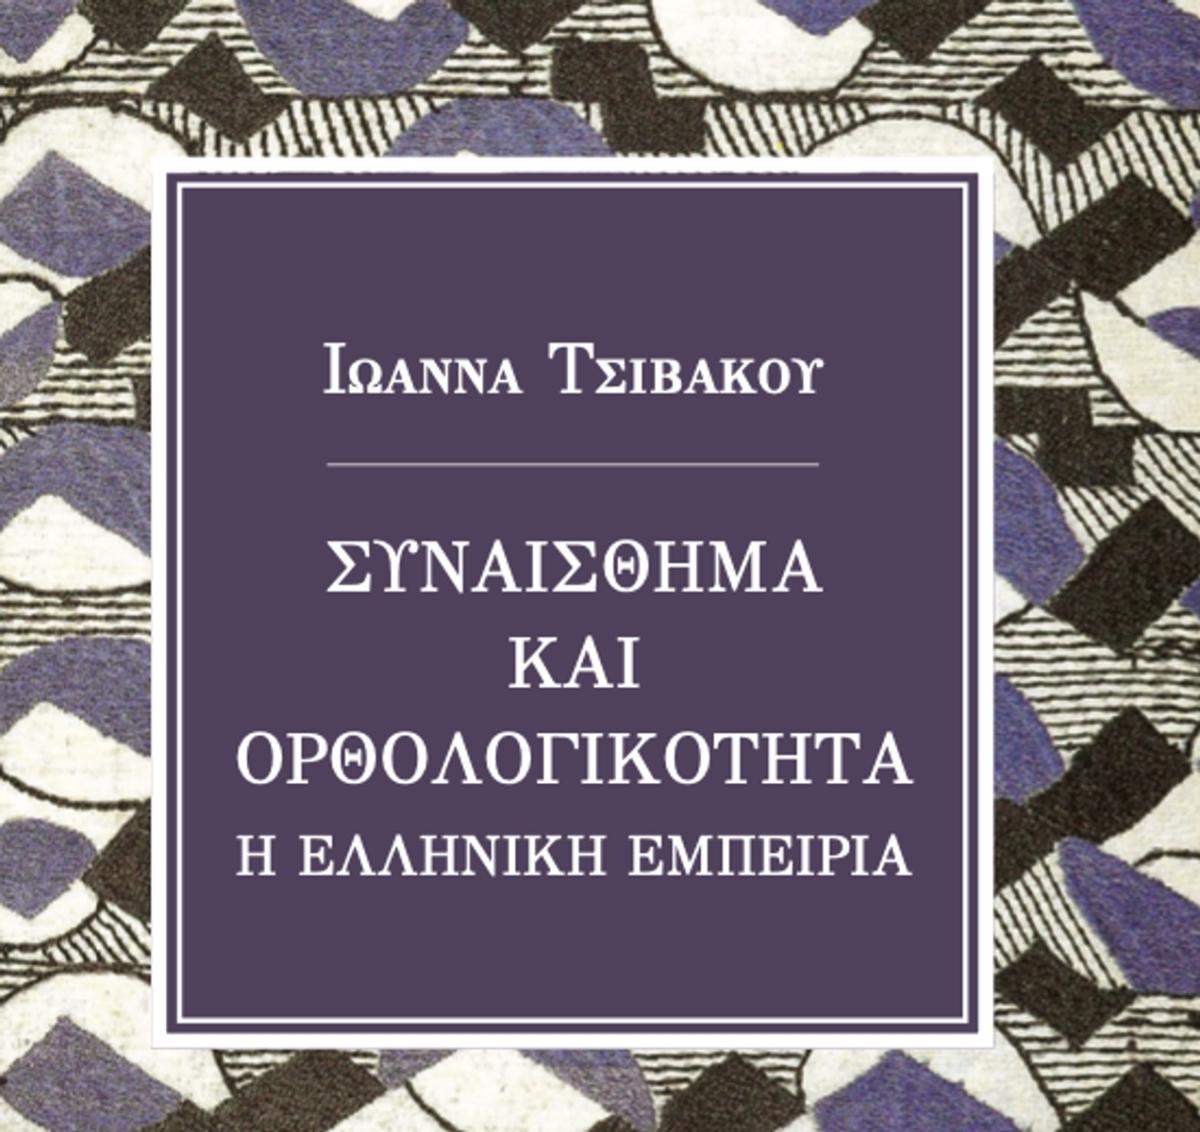 Το νέο βιβλίο της Ιωάννας Τσιβάκου: Συναίσθημα και Ορθολογικότητα